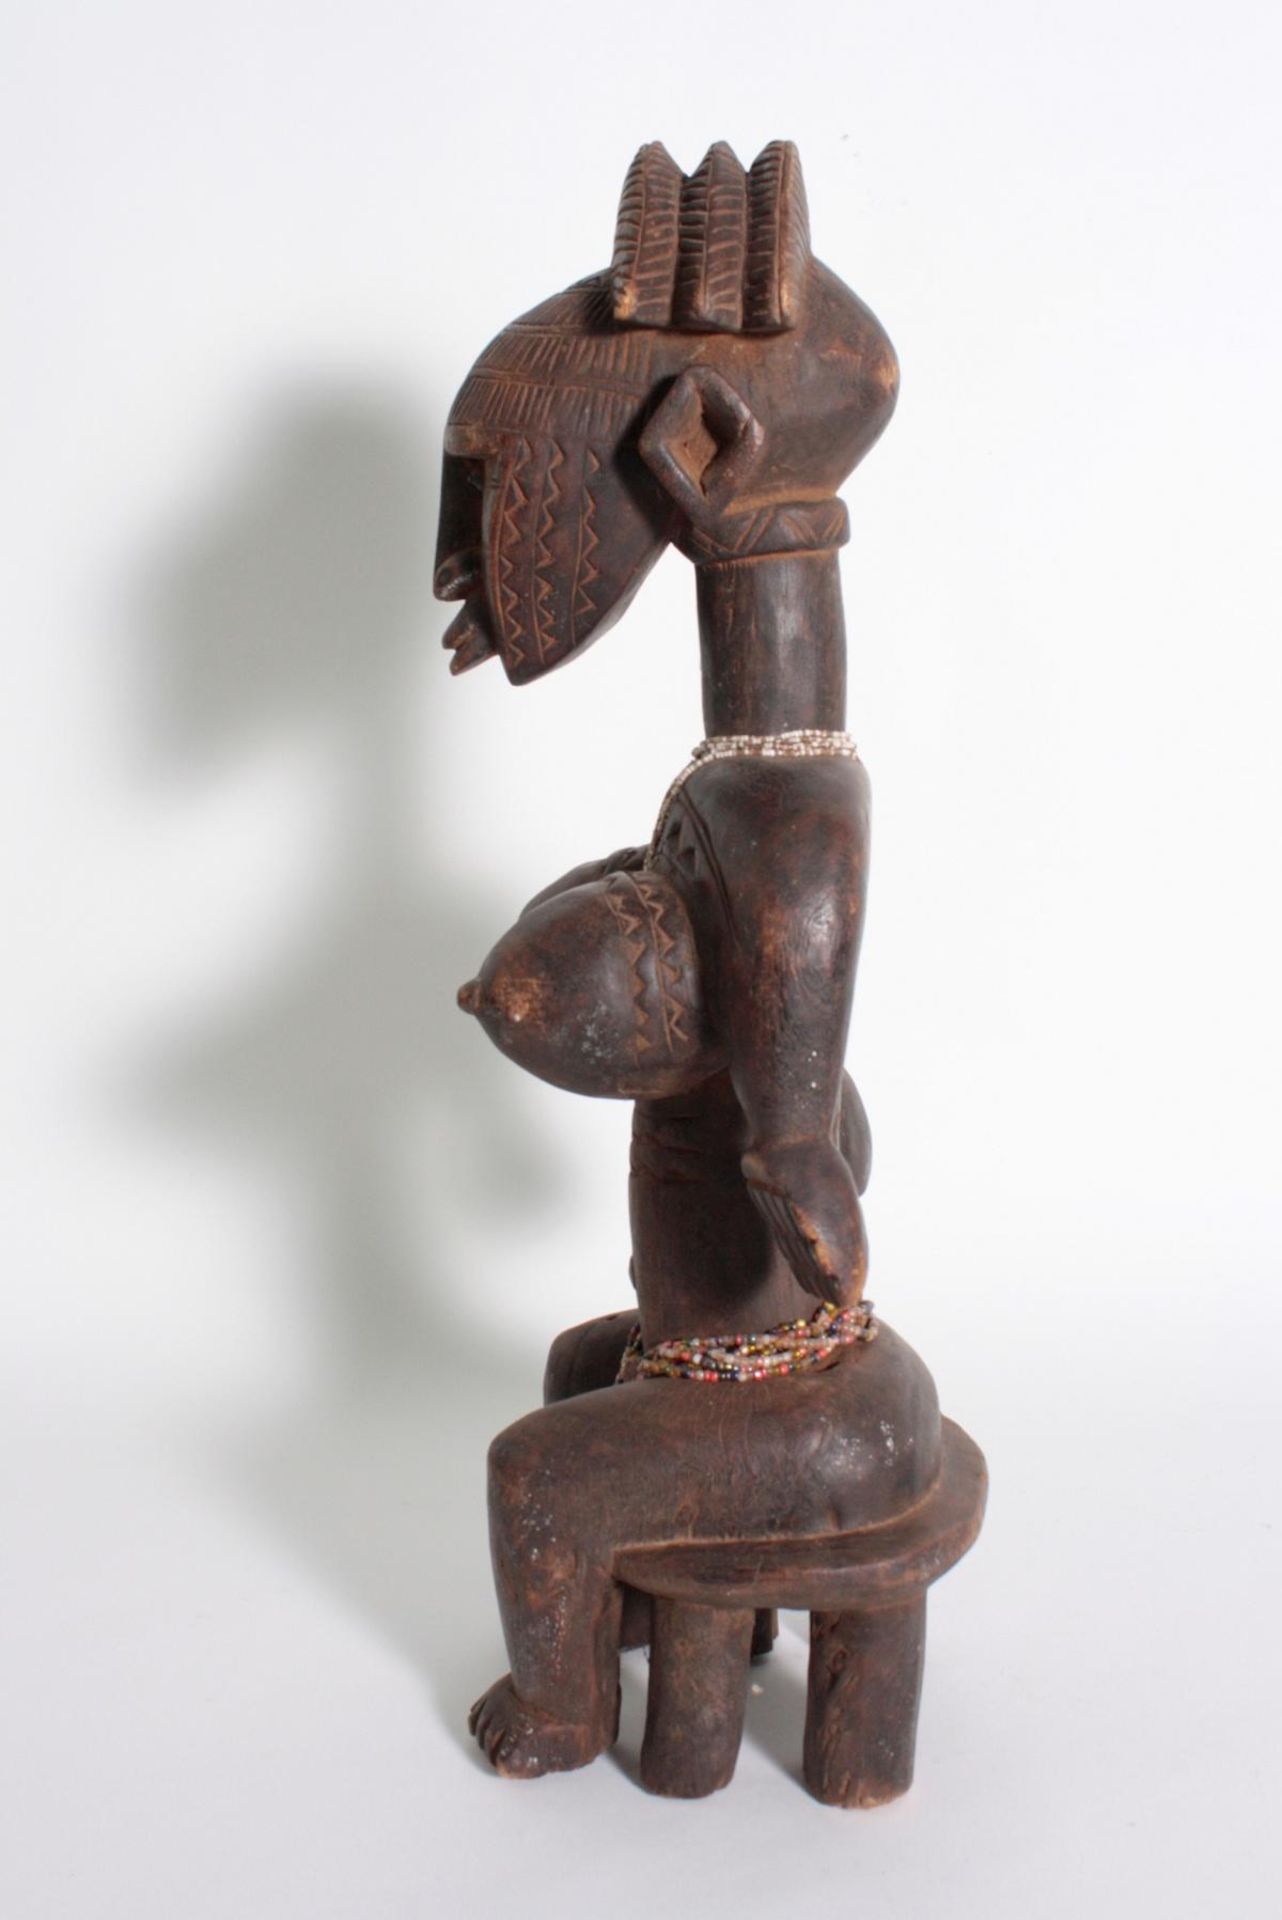 Bambara/Mali, sitzende weibliche Figur, 1. Hälfte 20. Jh.Holz, dunkelbraune Patina, sitzende Frau - Bild 5 aus 6